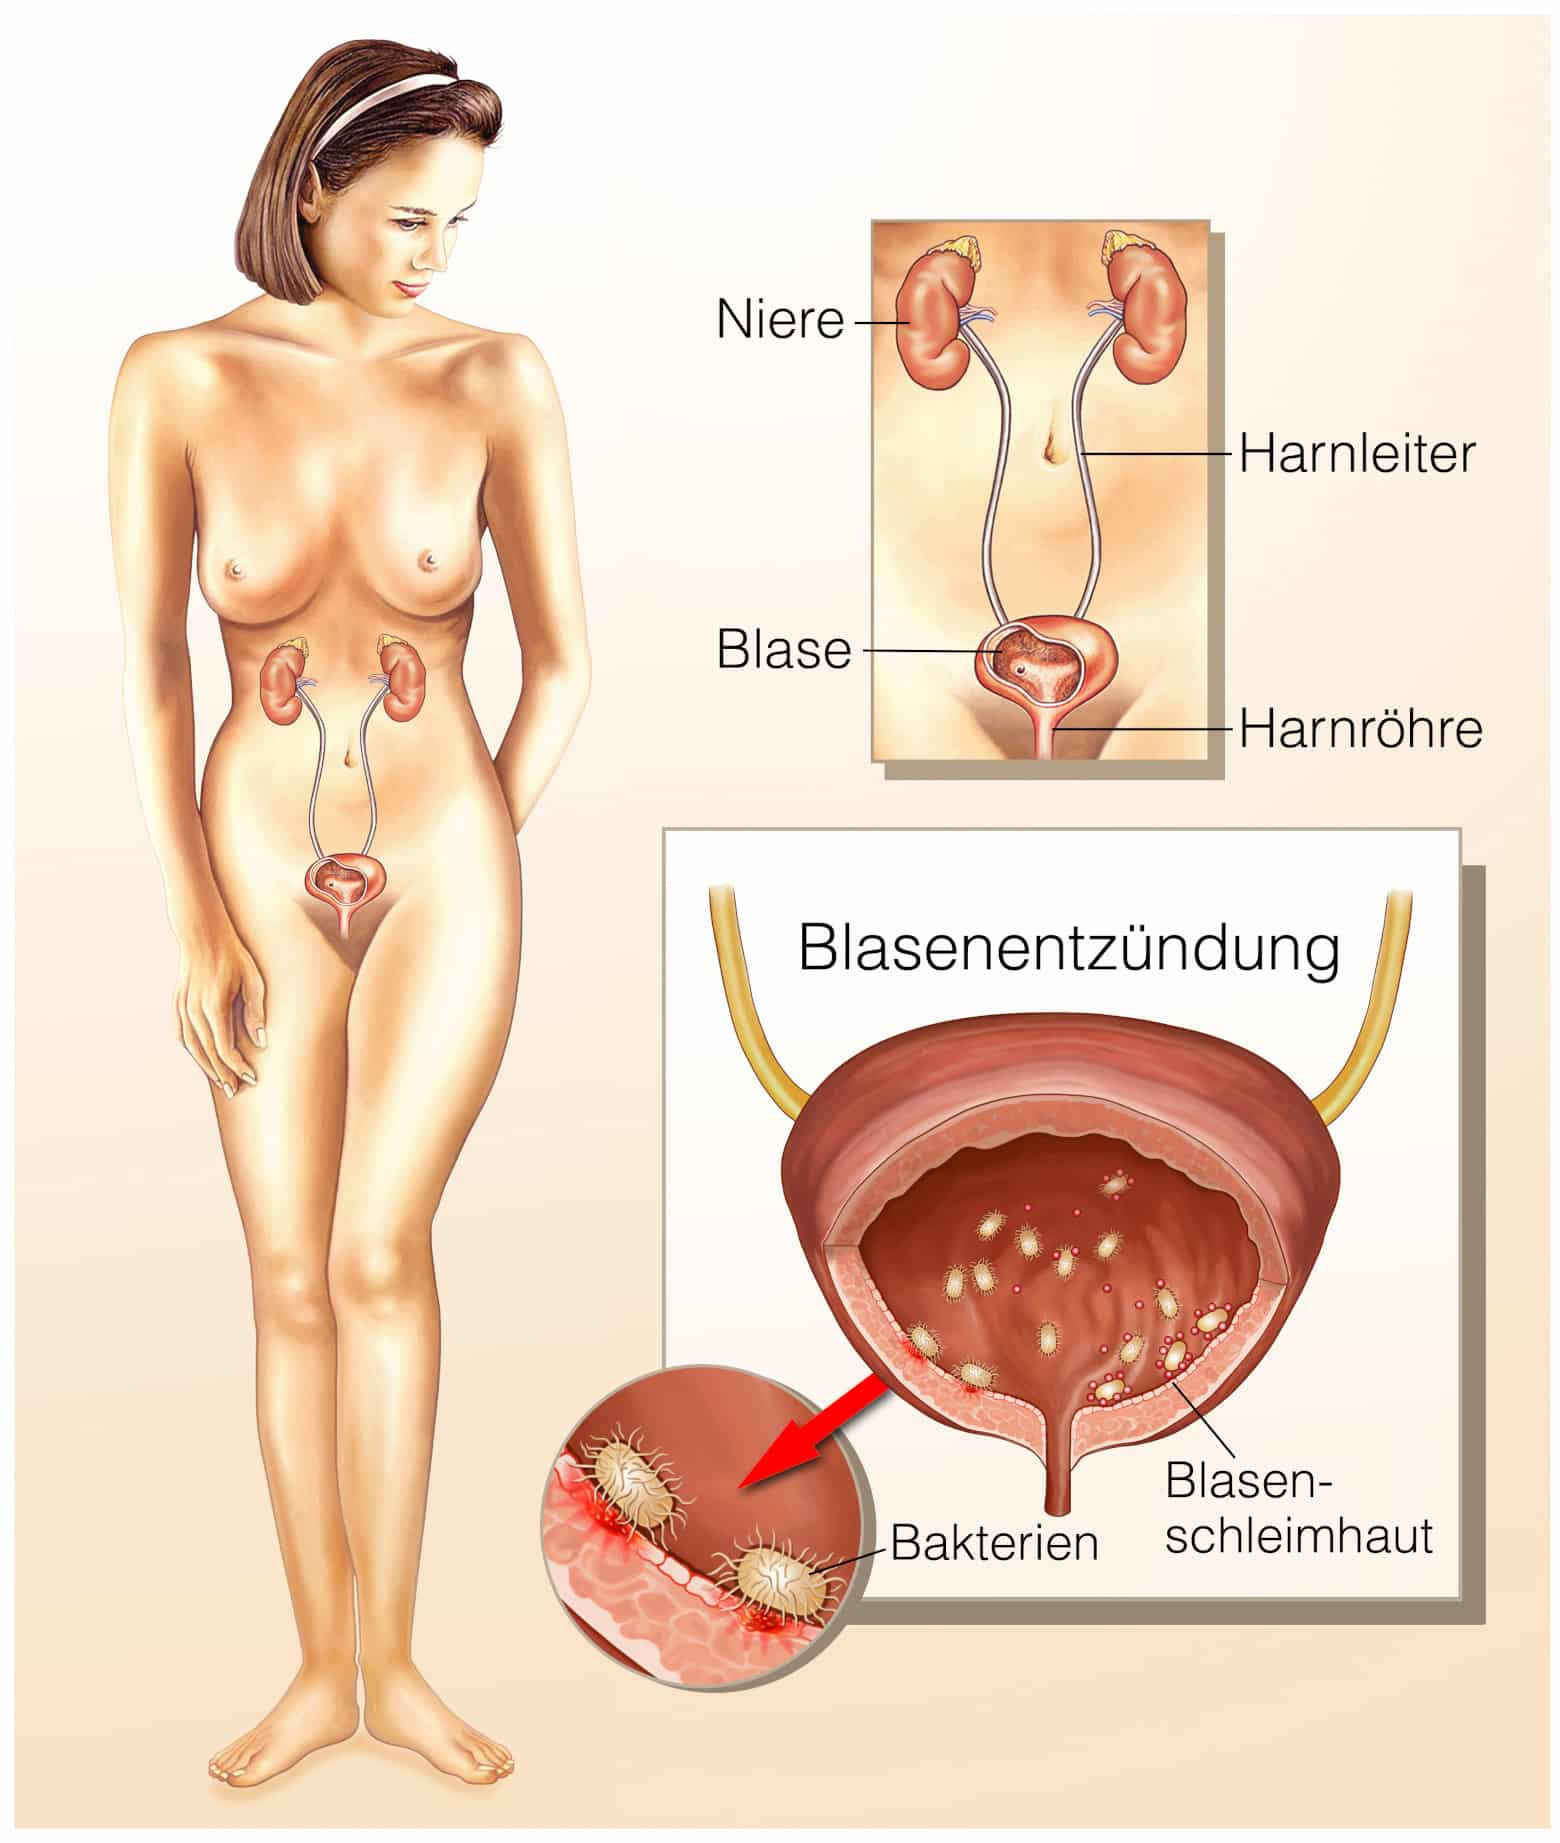 Blasenentzündung - Schema